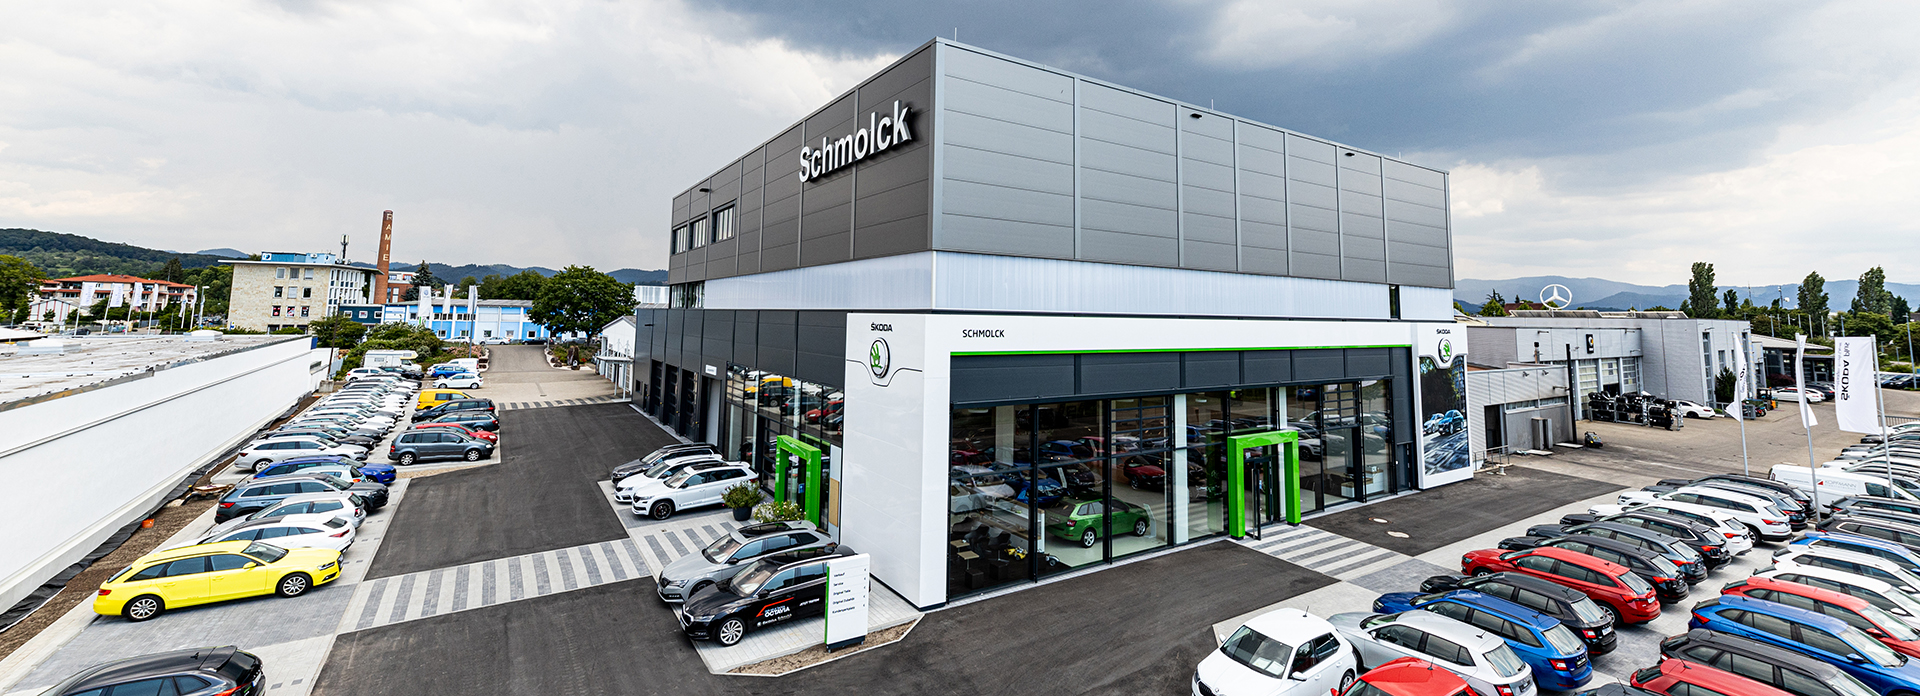 Das Autohaus Schmolck ist Ihr ŠKODA und VW Partner in Emmendingen.